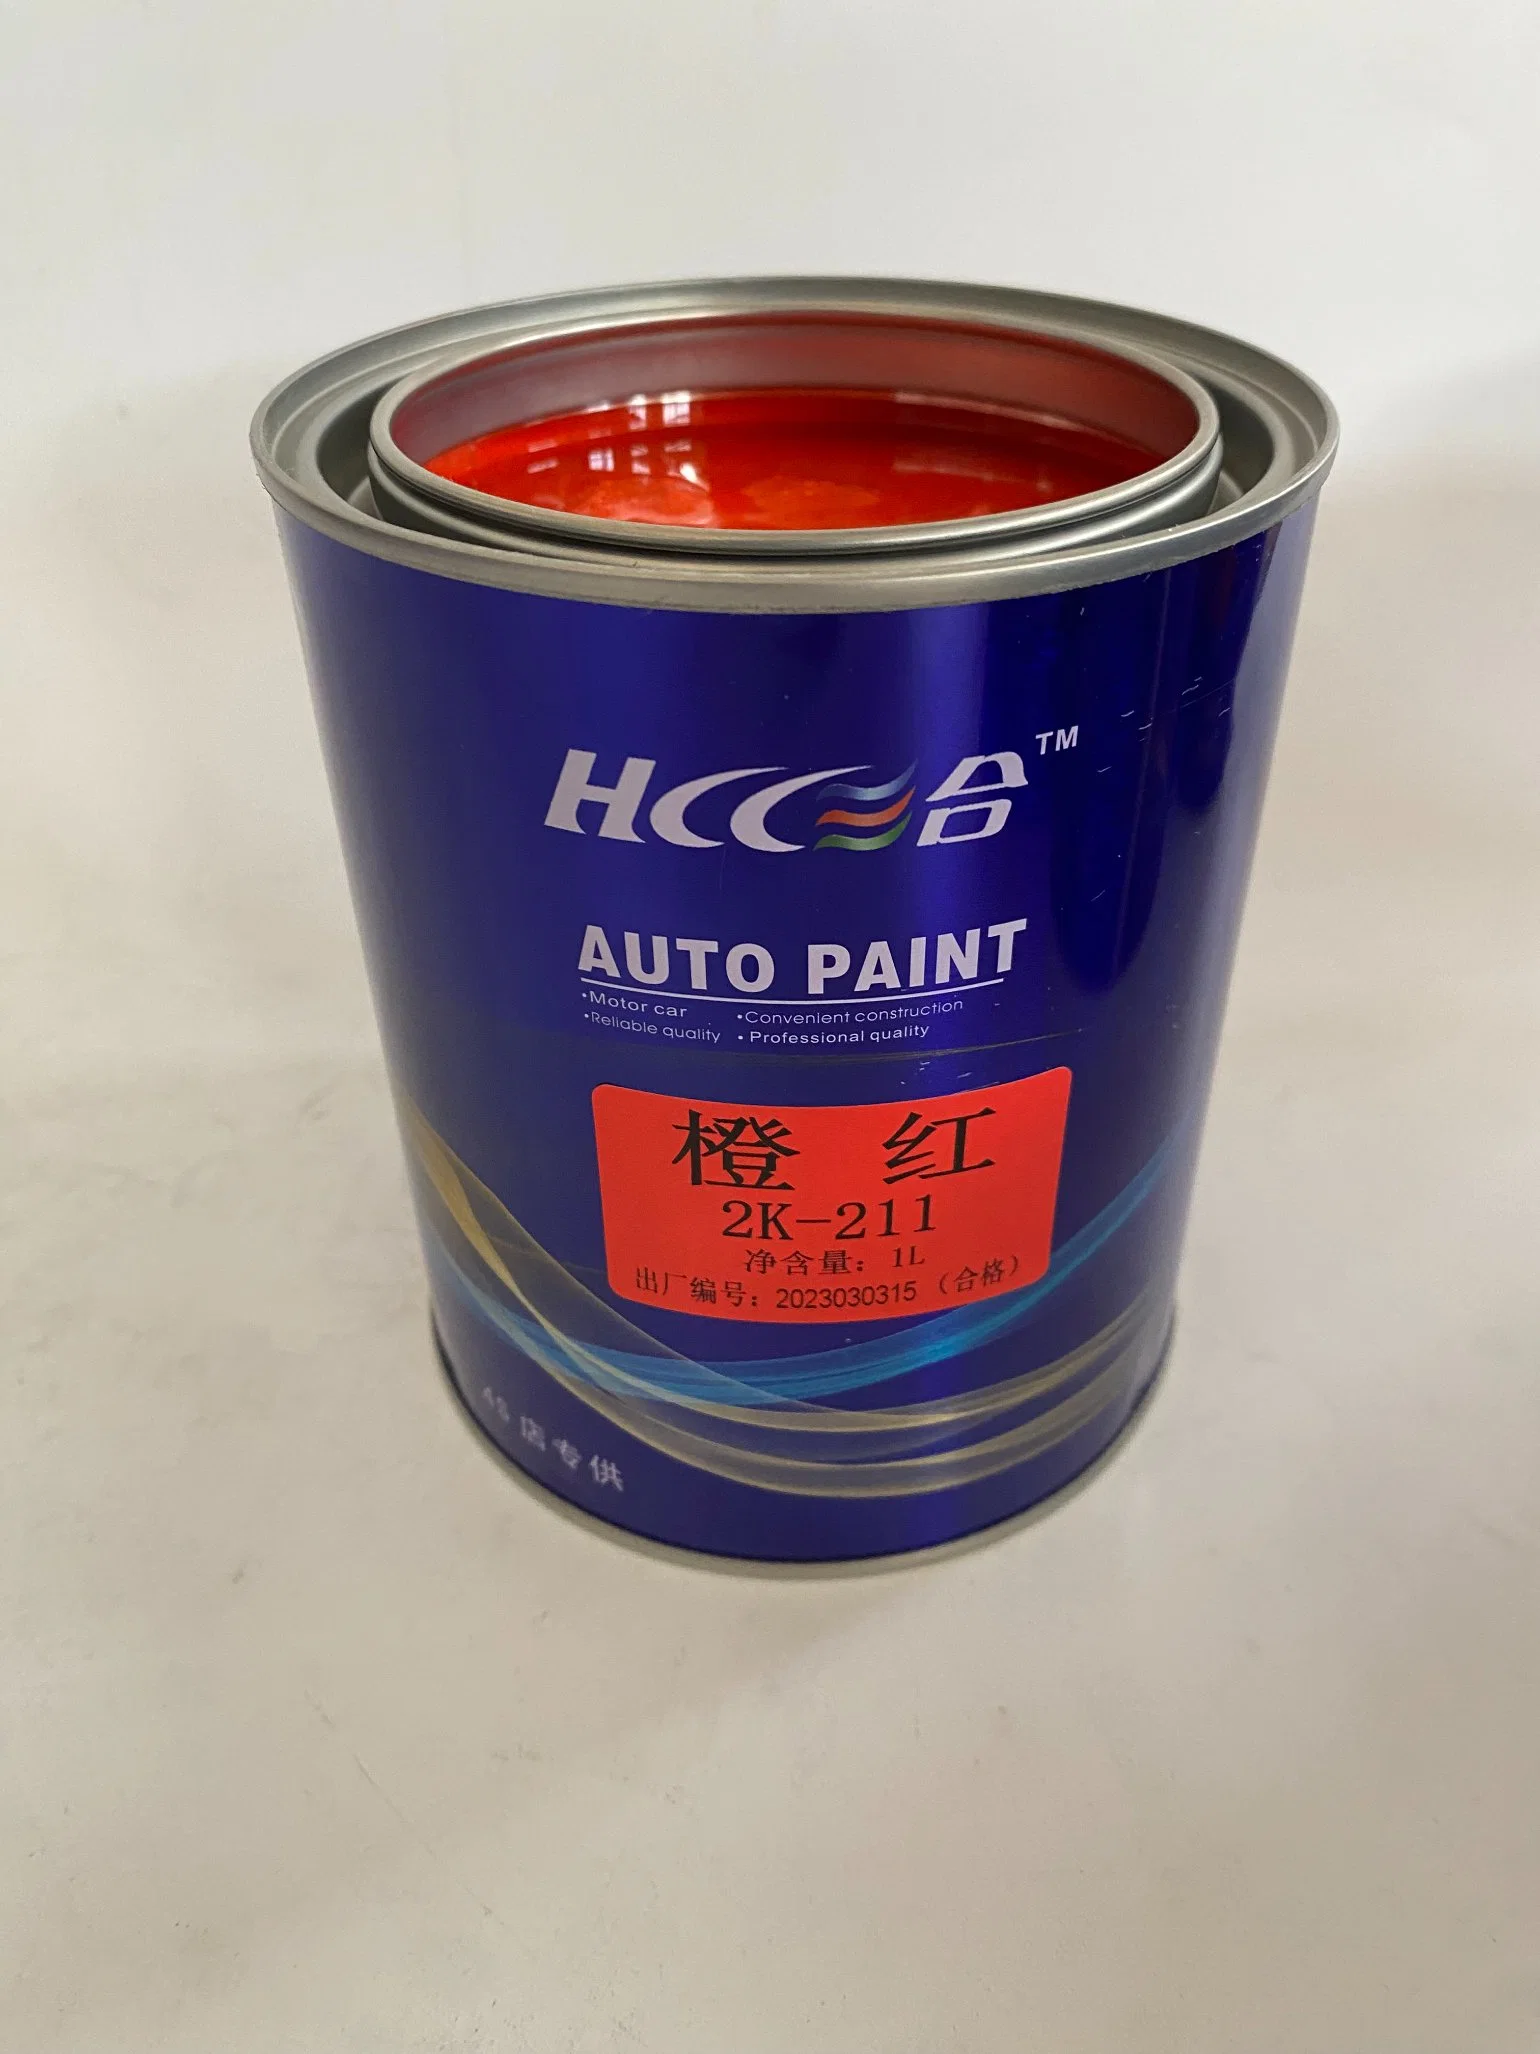 طلاء السيارة بالعلامة التجارية للسيارة Car Sh Hand Car Paint إصلاح تعبئة جسم الطلاء